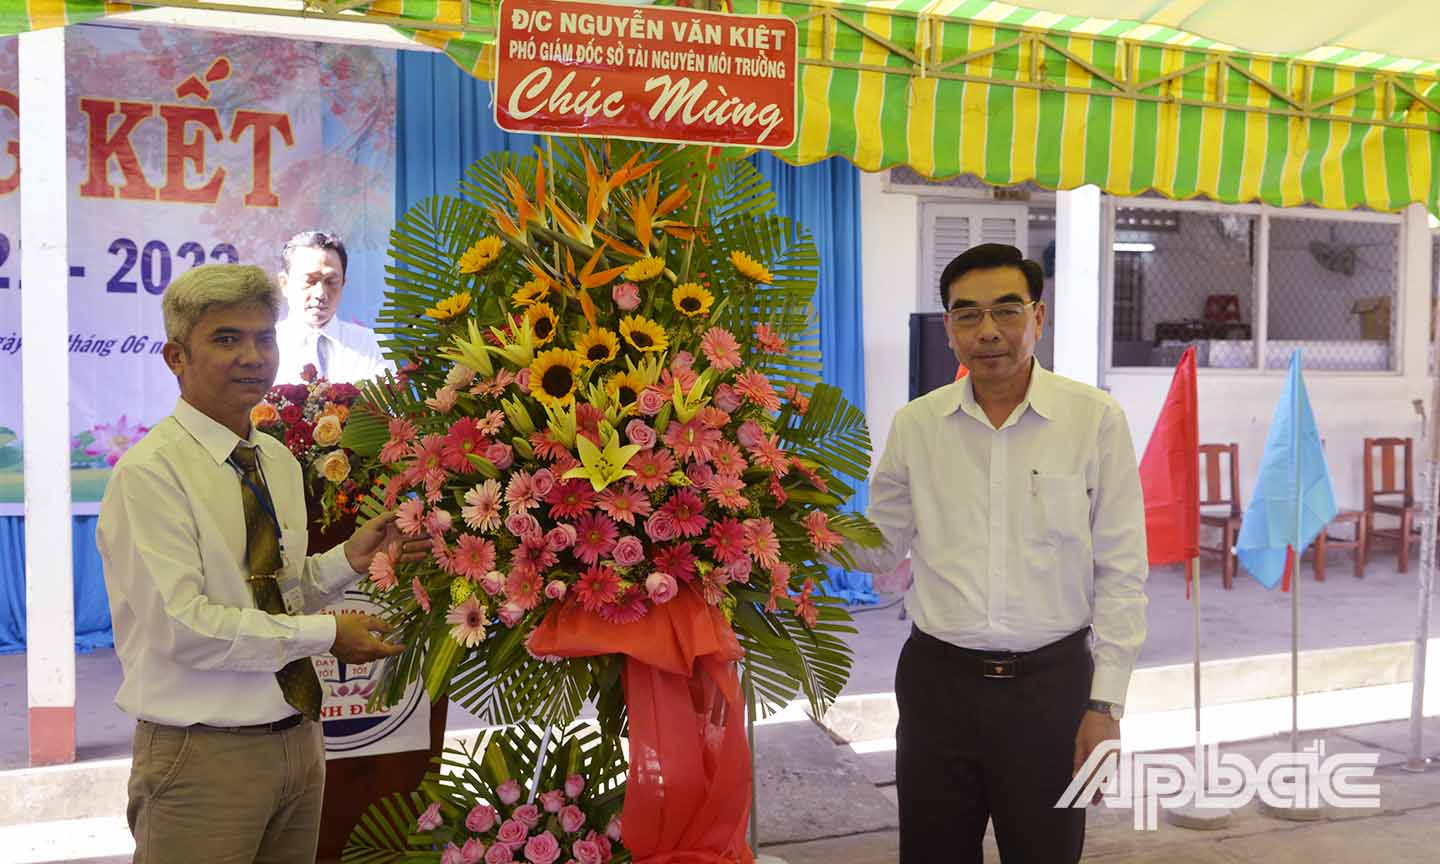 Đồng chí Lê Quang Trí (bên phải, ảnh trên) và đồng chí Nguyễn Văn Kiệt (bên phải, ảnh dưới) tặng hoa chúc mừng Trường Tiểu học Bình Đức.